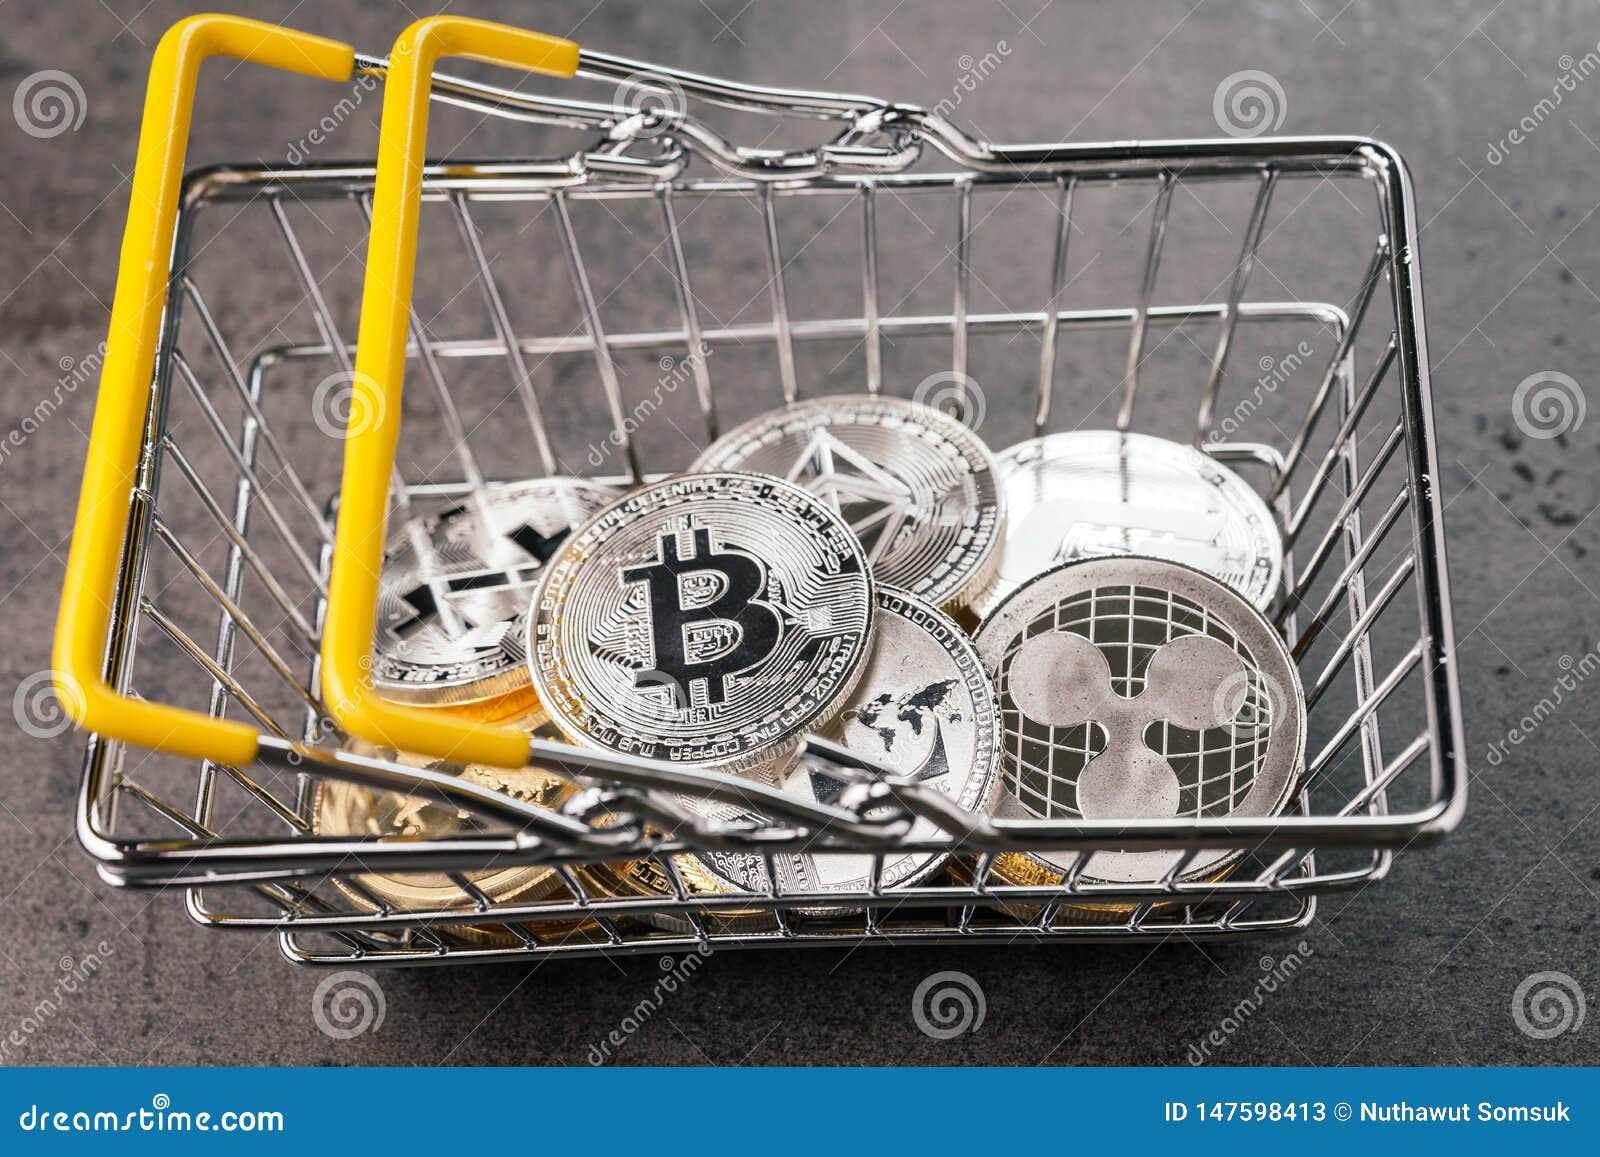 crypto coin shopping